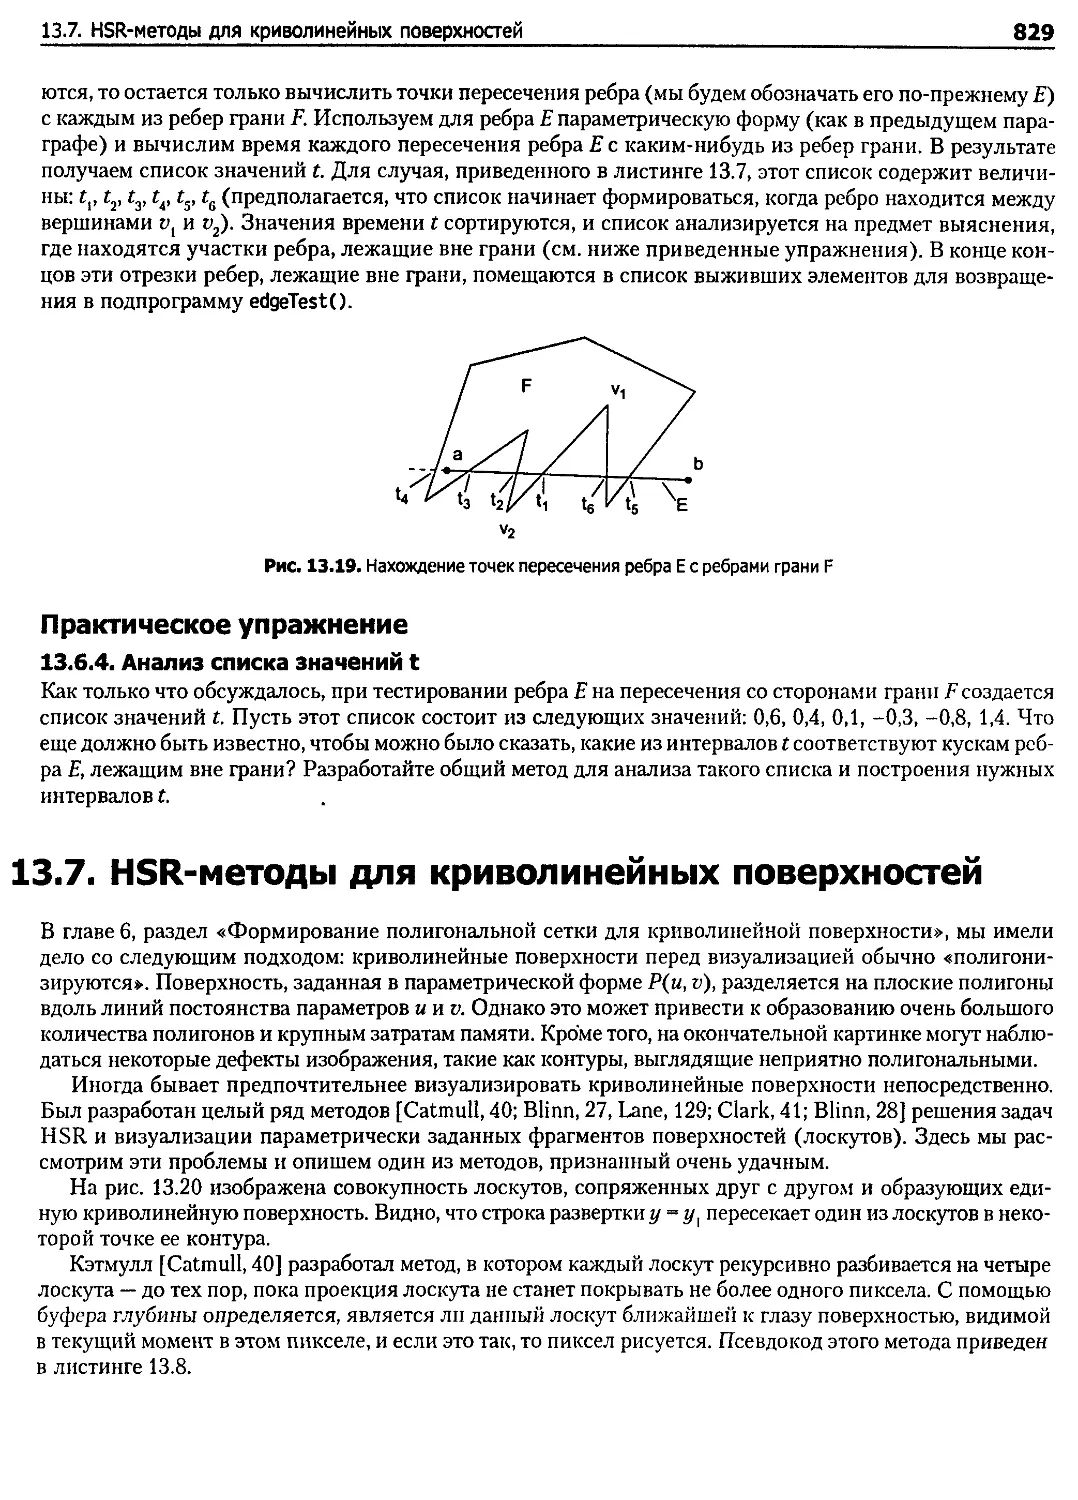 13.7. HSR-методы для криволинейных поверхностей